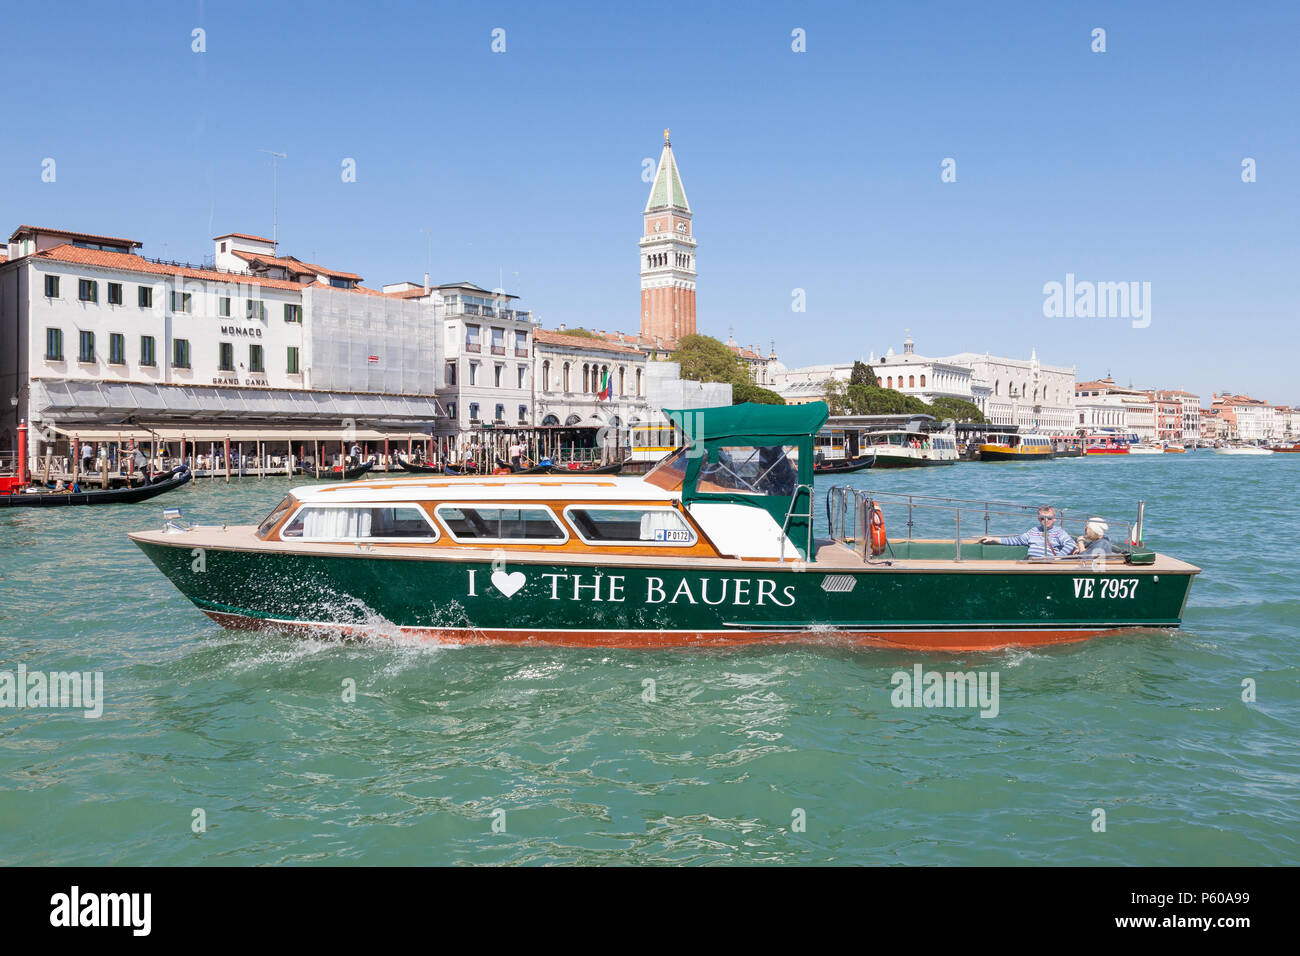 Le taxi d'eau privé Bauer convoyant les clients sur Basino San Marco, Venice, Veneto, Italie. Hôtels de luxe Bauer, bateau, Place St Marc, du bassin, des transports Banque D'Images